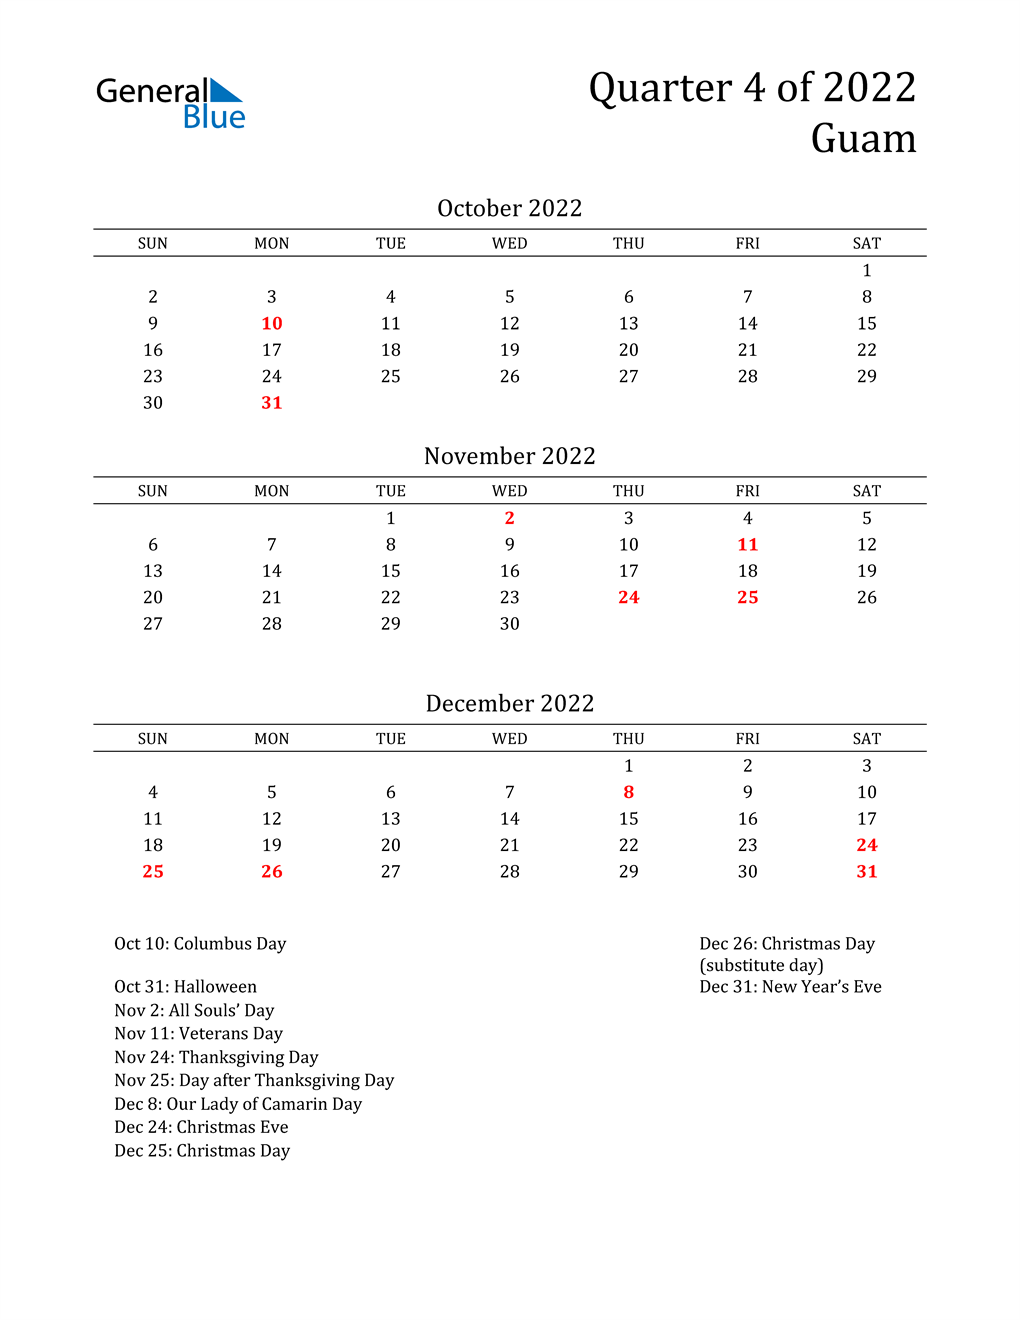  2022 Guam Quarterly Calendar